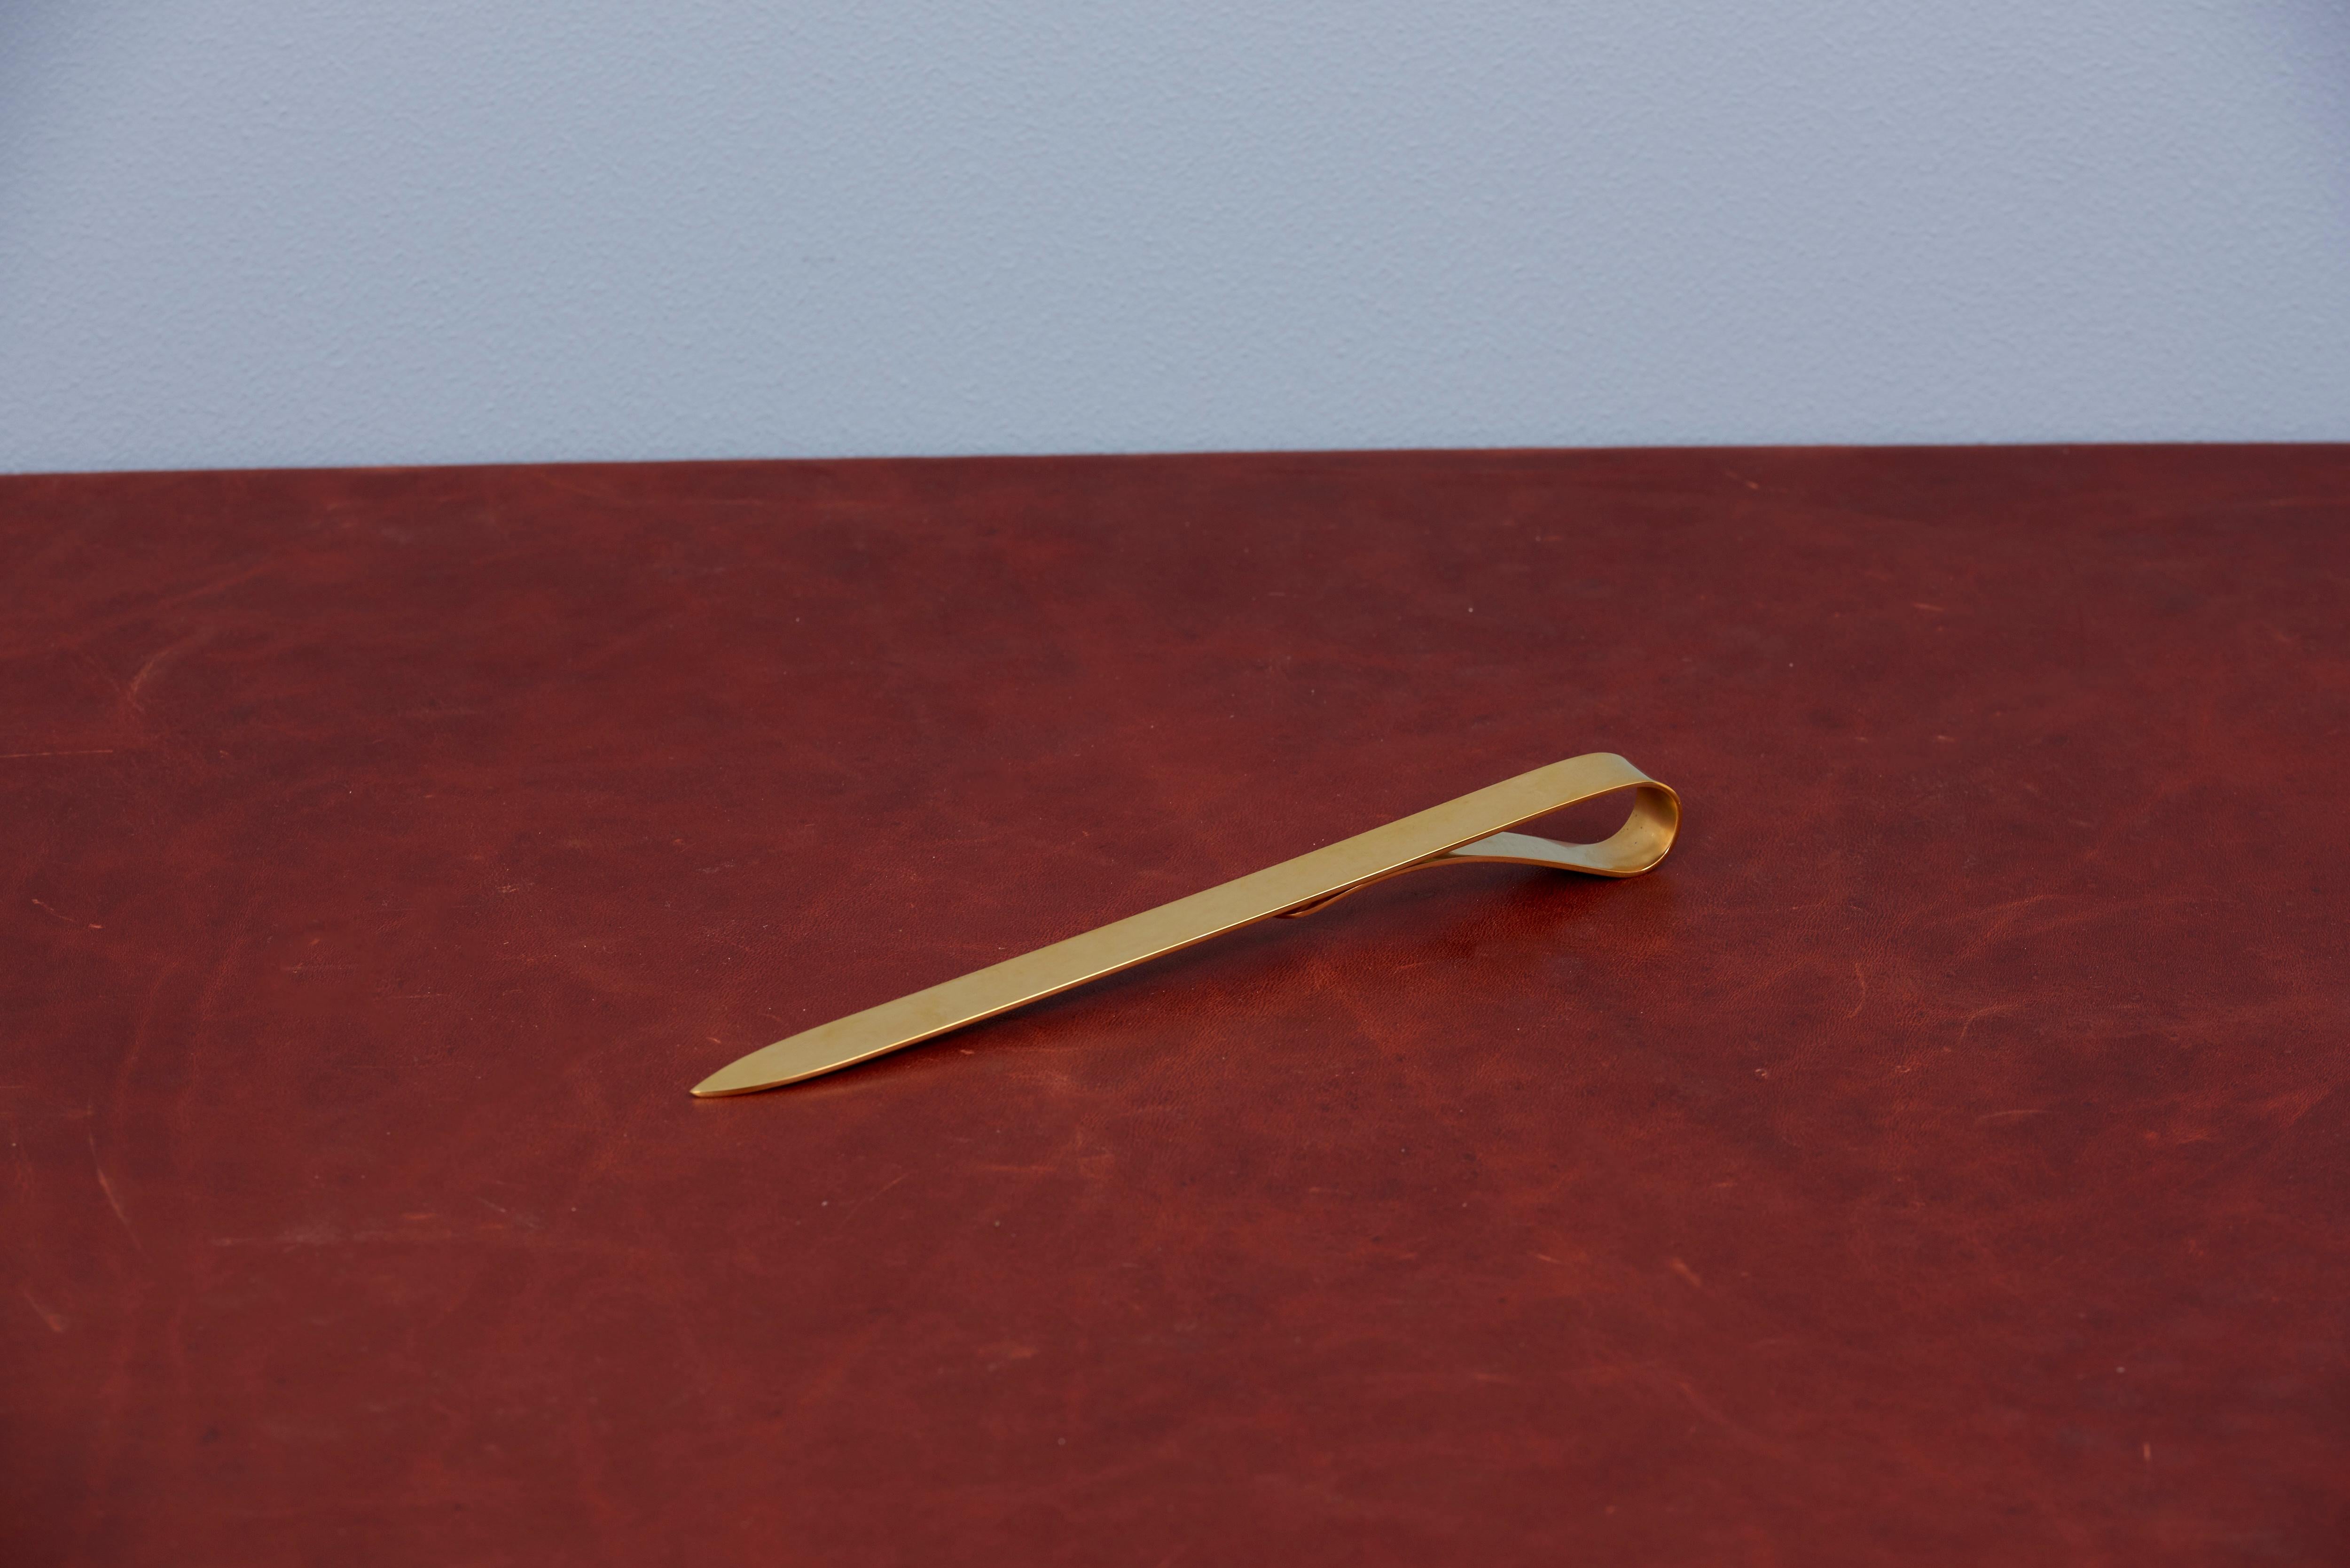 Brass paperknife by Carl Auböck.